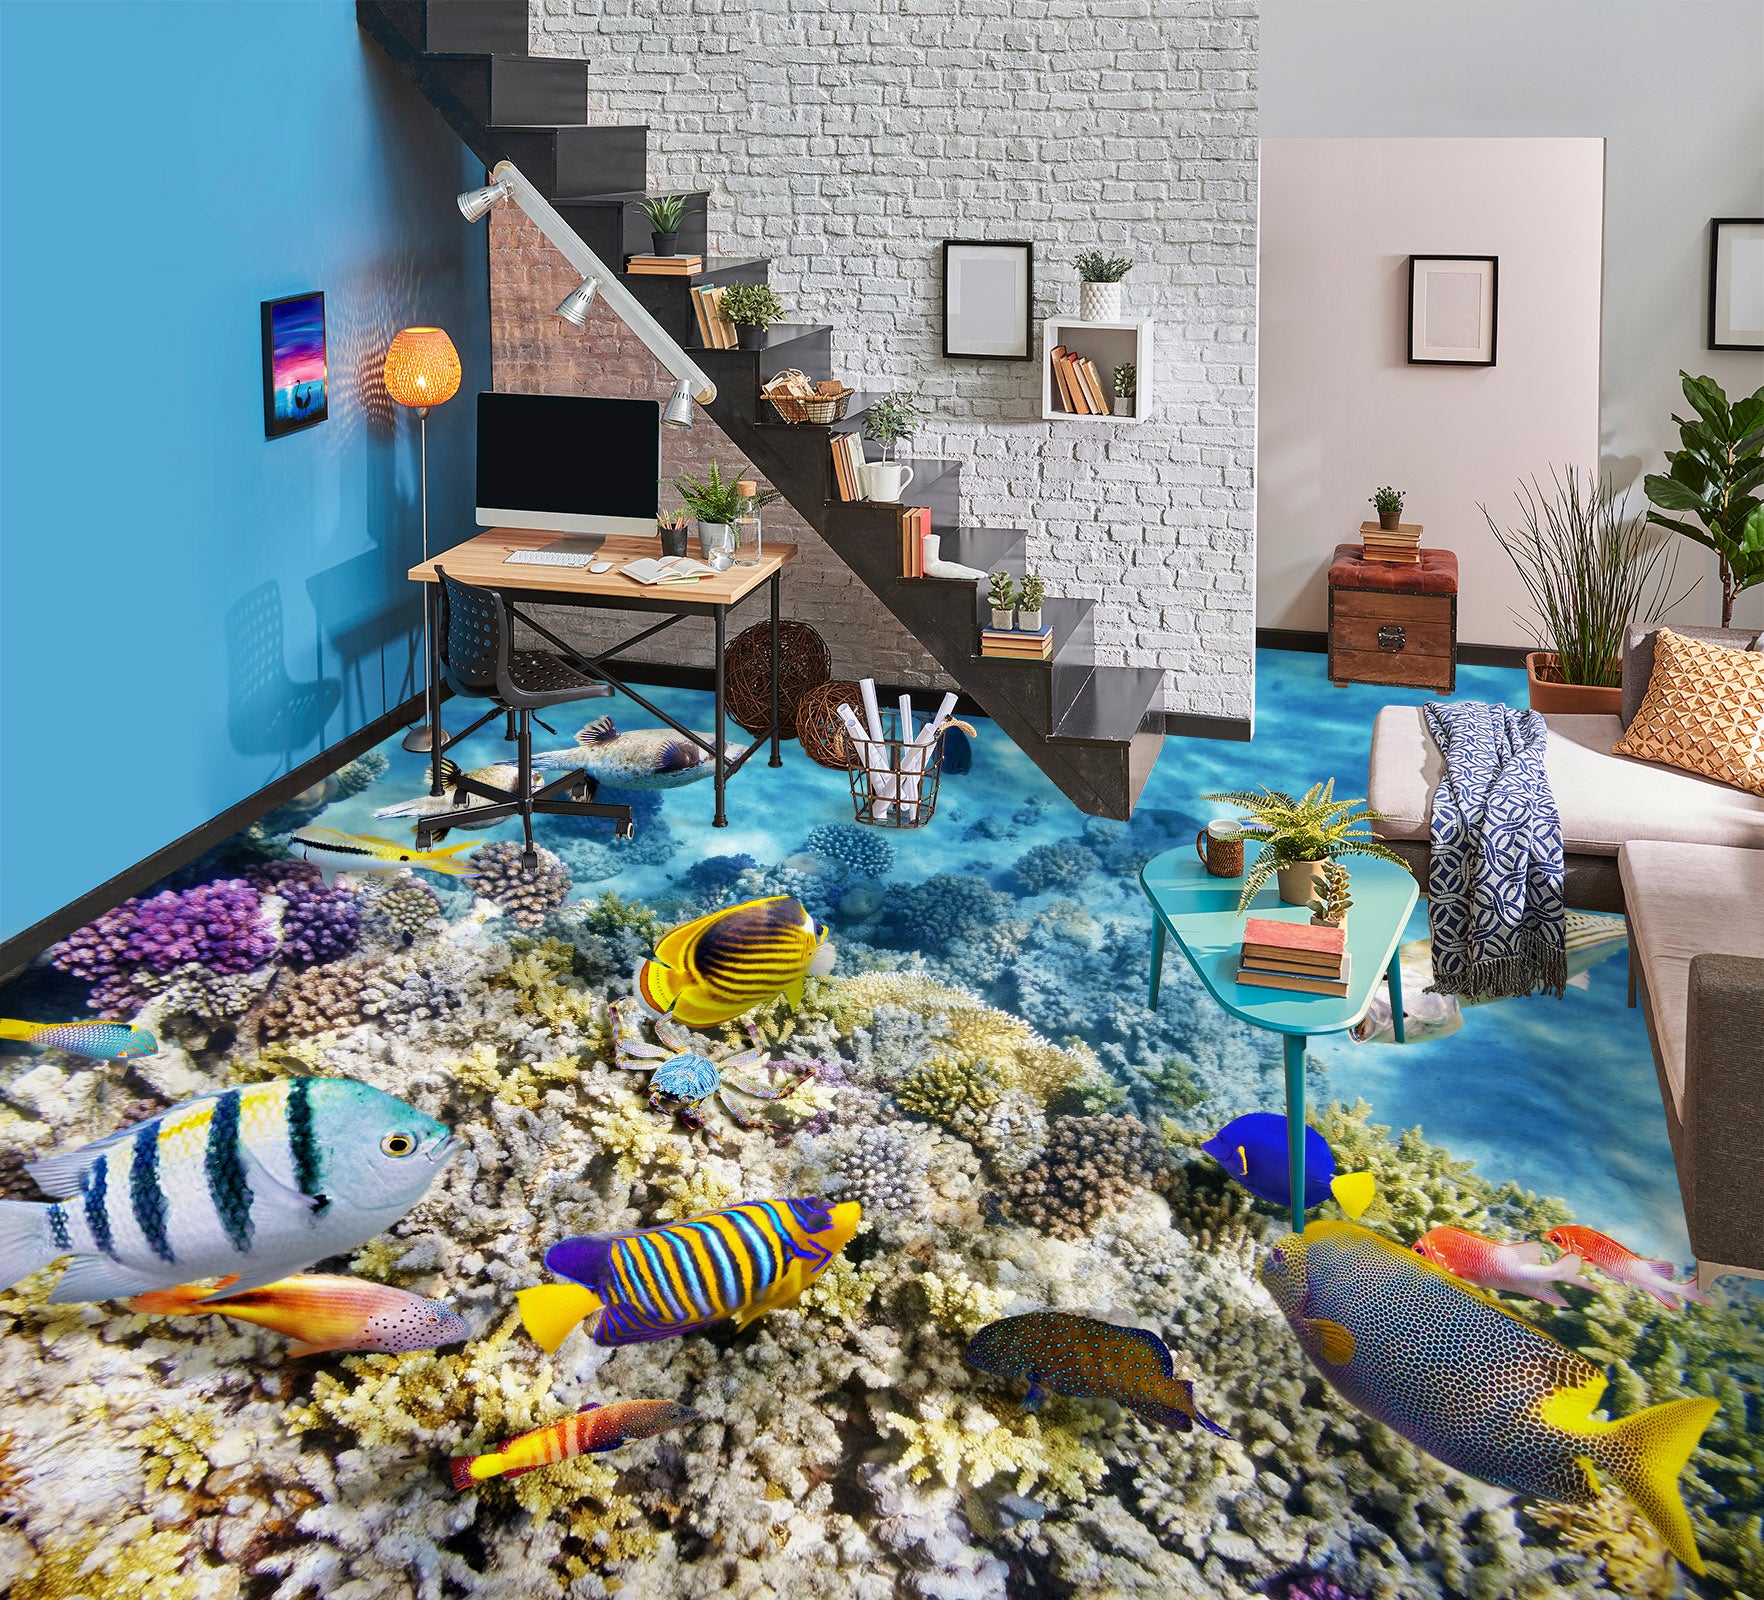 3D Free Happy Fish 707 Floor Mural  Wallpaper Murals Rug & Mat Print Epoxy waterproof bath floor